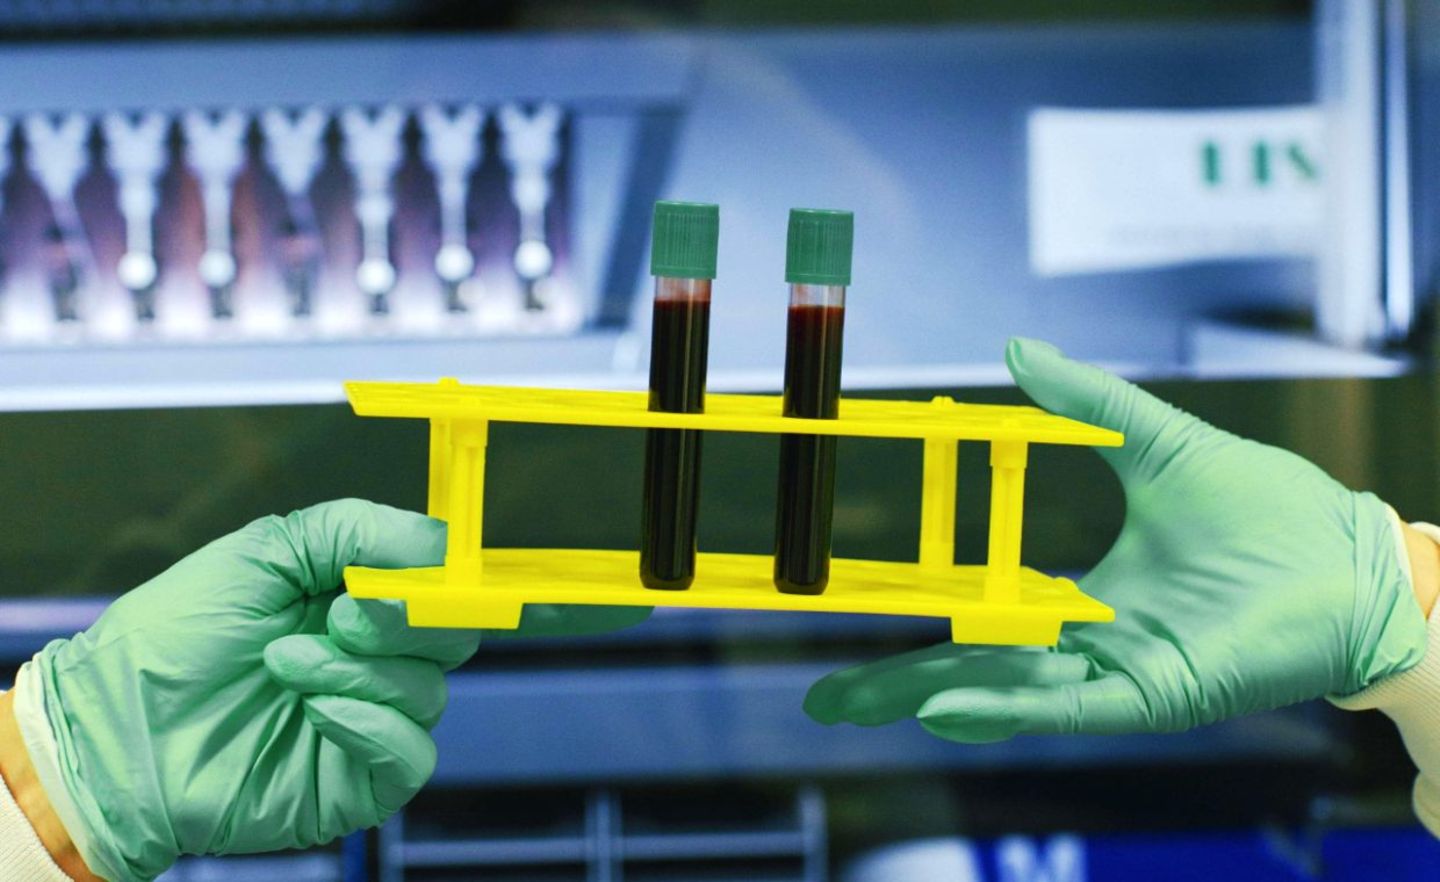 Das wird vielleicht mal groß: Das Pharma-Start-up Biontech könnte zum Weltkonzern aufsteigen